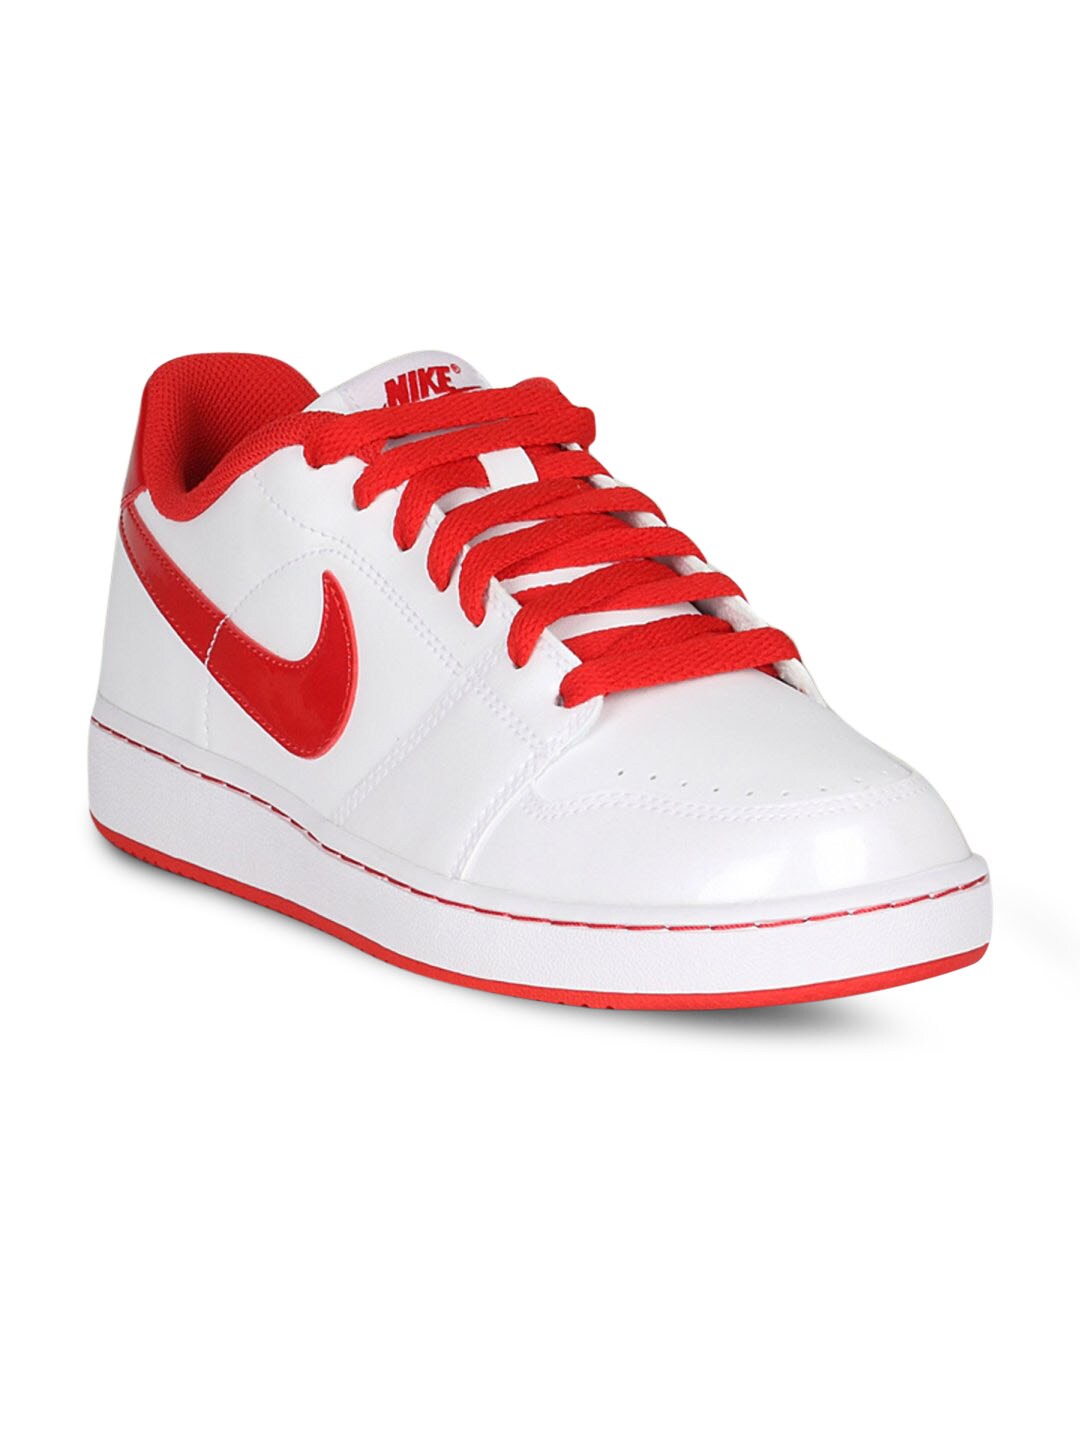 Nike Men's Backboard White Red Shoe